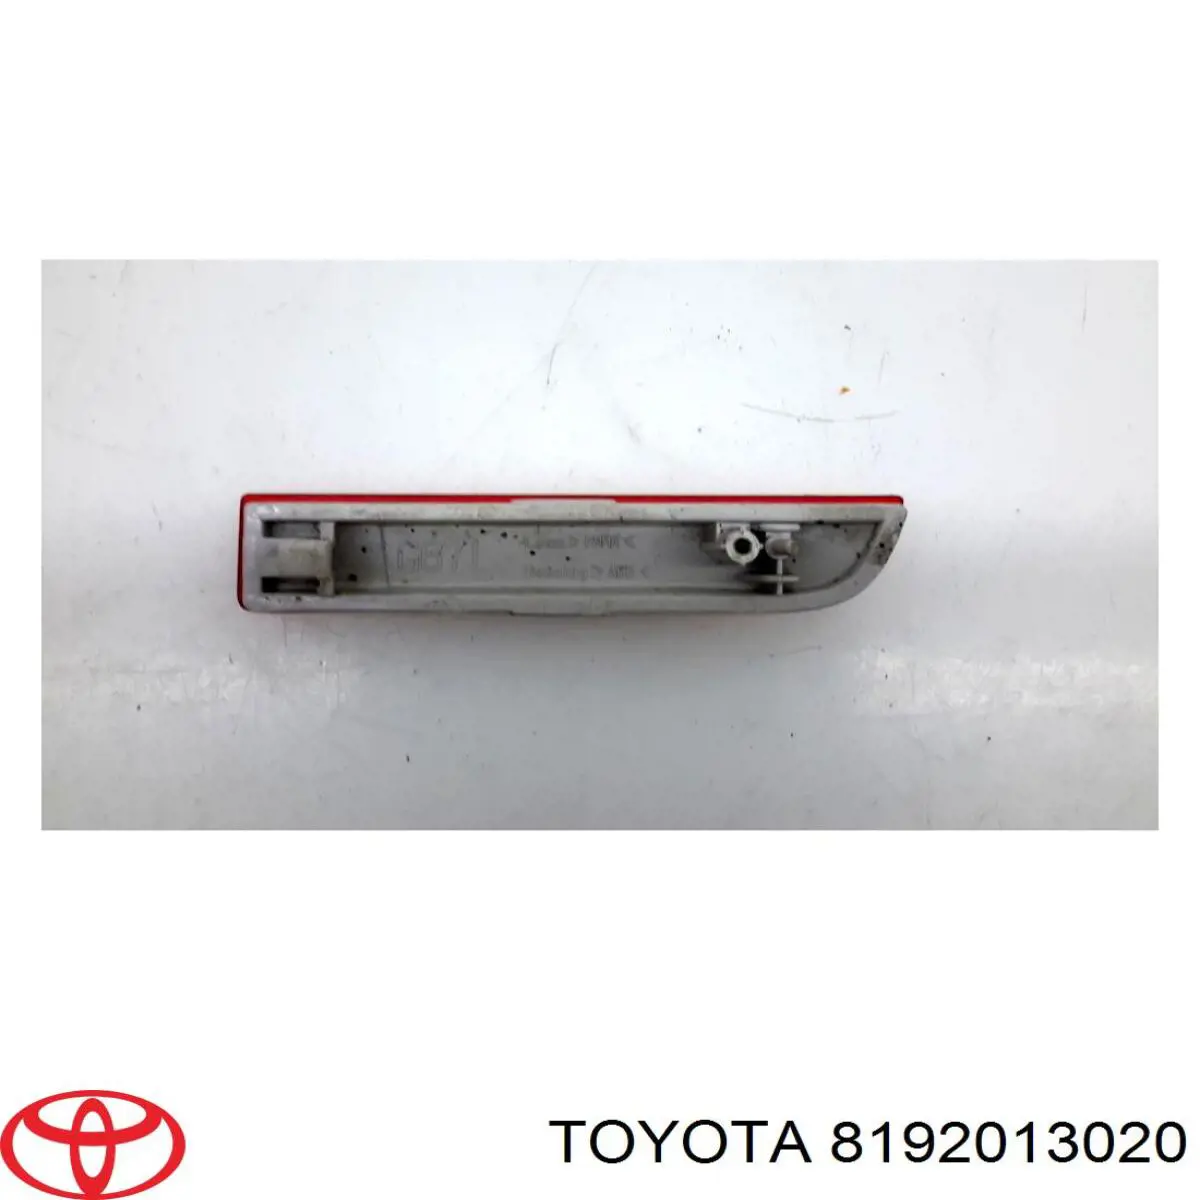 Retrorrefletor (refletor) do pára-choque traseiro esquerdo para Toyota Avensis (LCM)